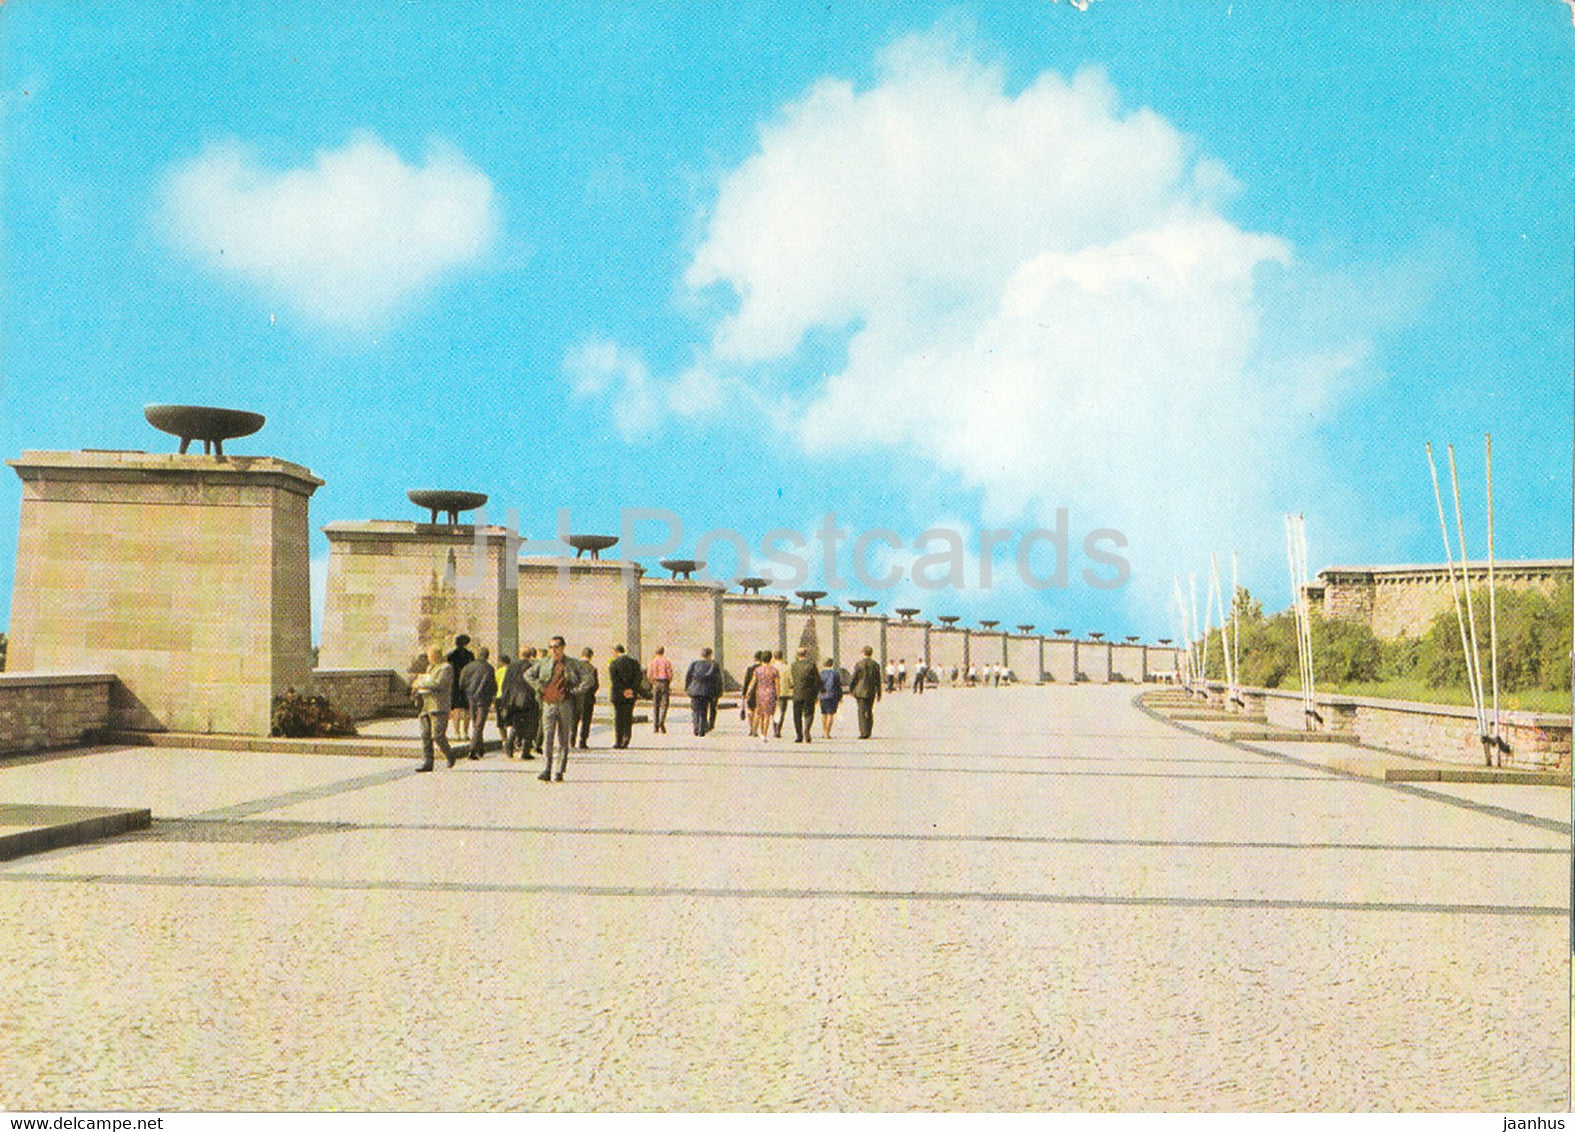 Nationale Mahn und Gedenkstatte Buchenwald - Strasse der Nationen - Germany DDR - unused - JH Postcards